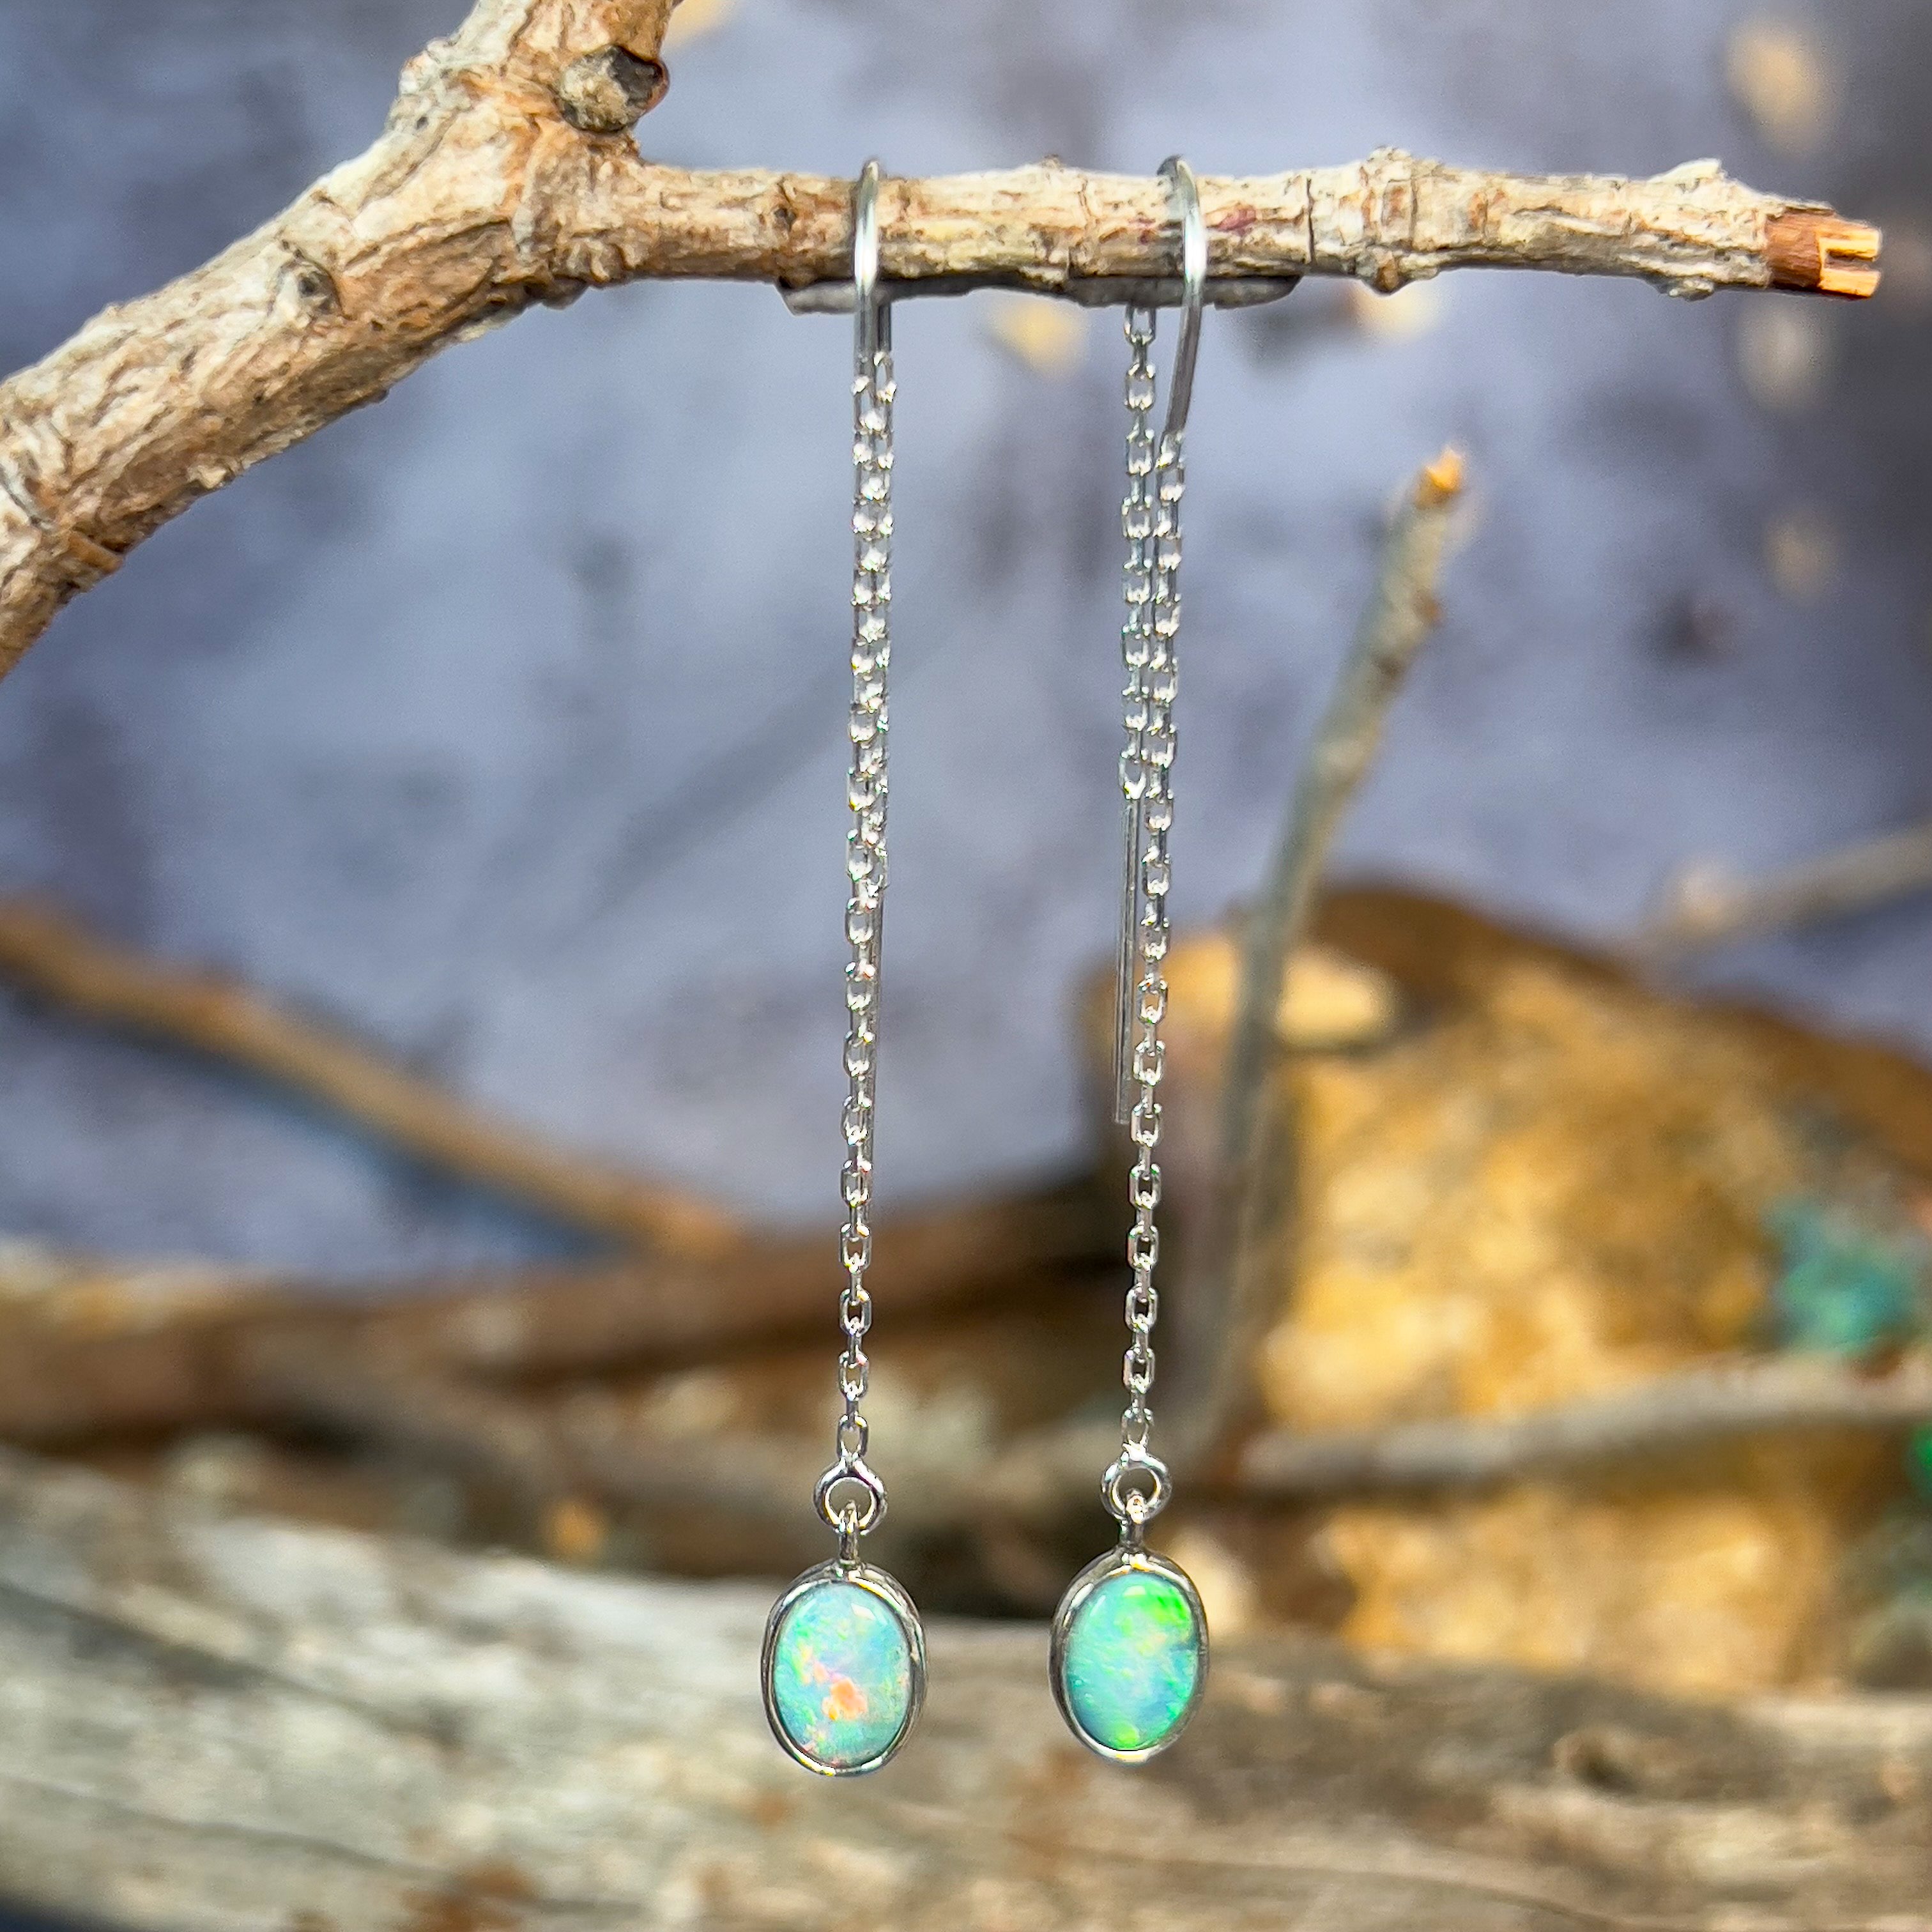 Sterling Silver thread through Opal dangling earrings - Masterpiece Jewellery Opal & Gems Sydney Australia | Online Shop